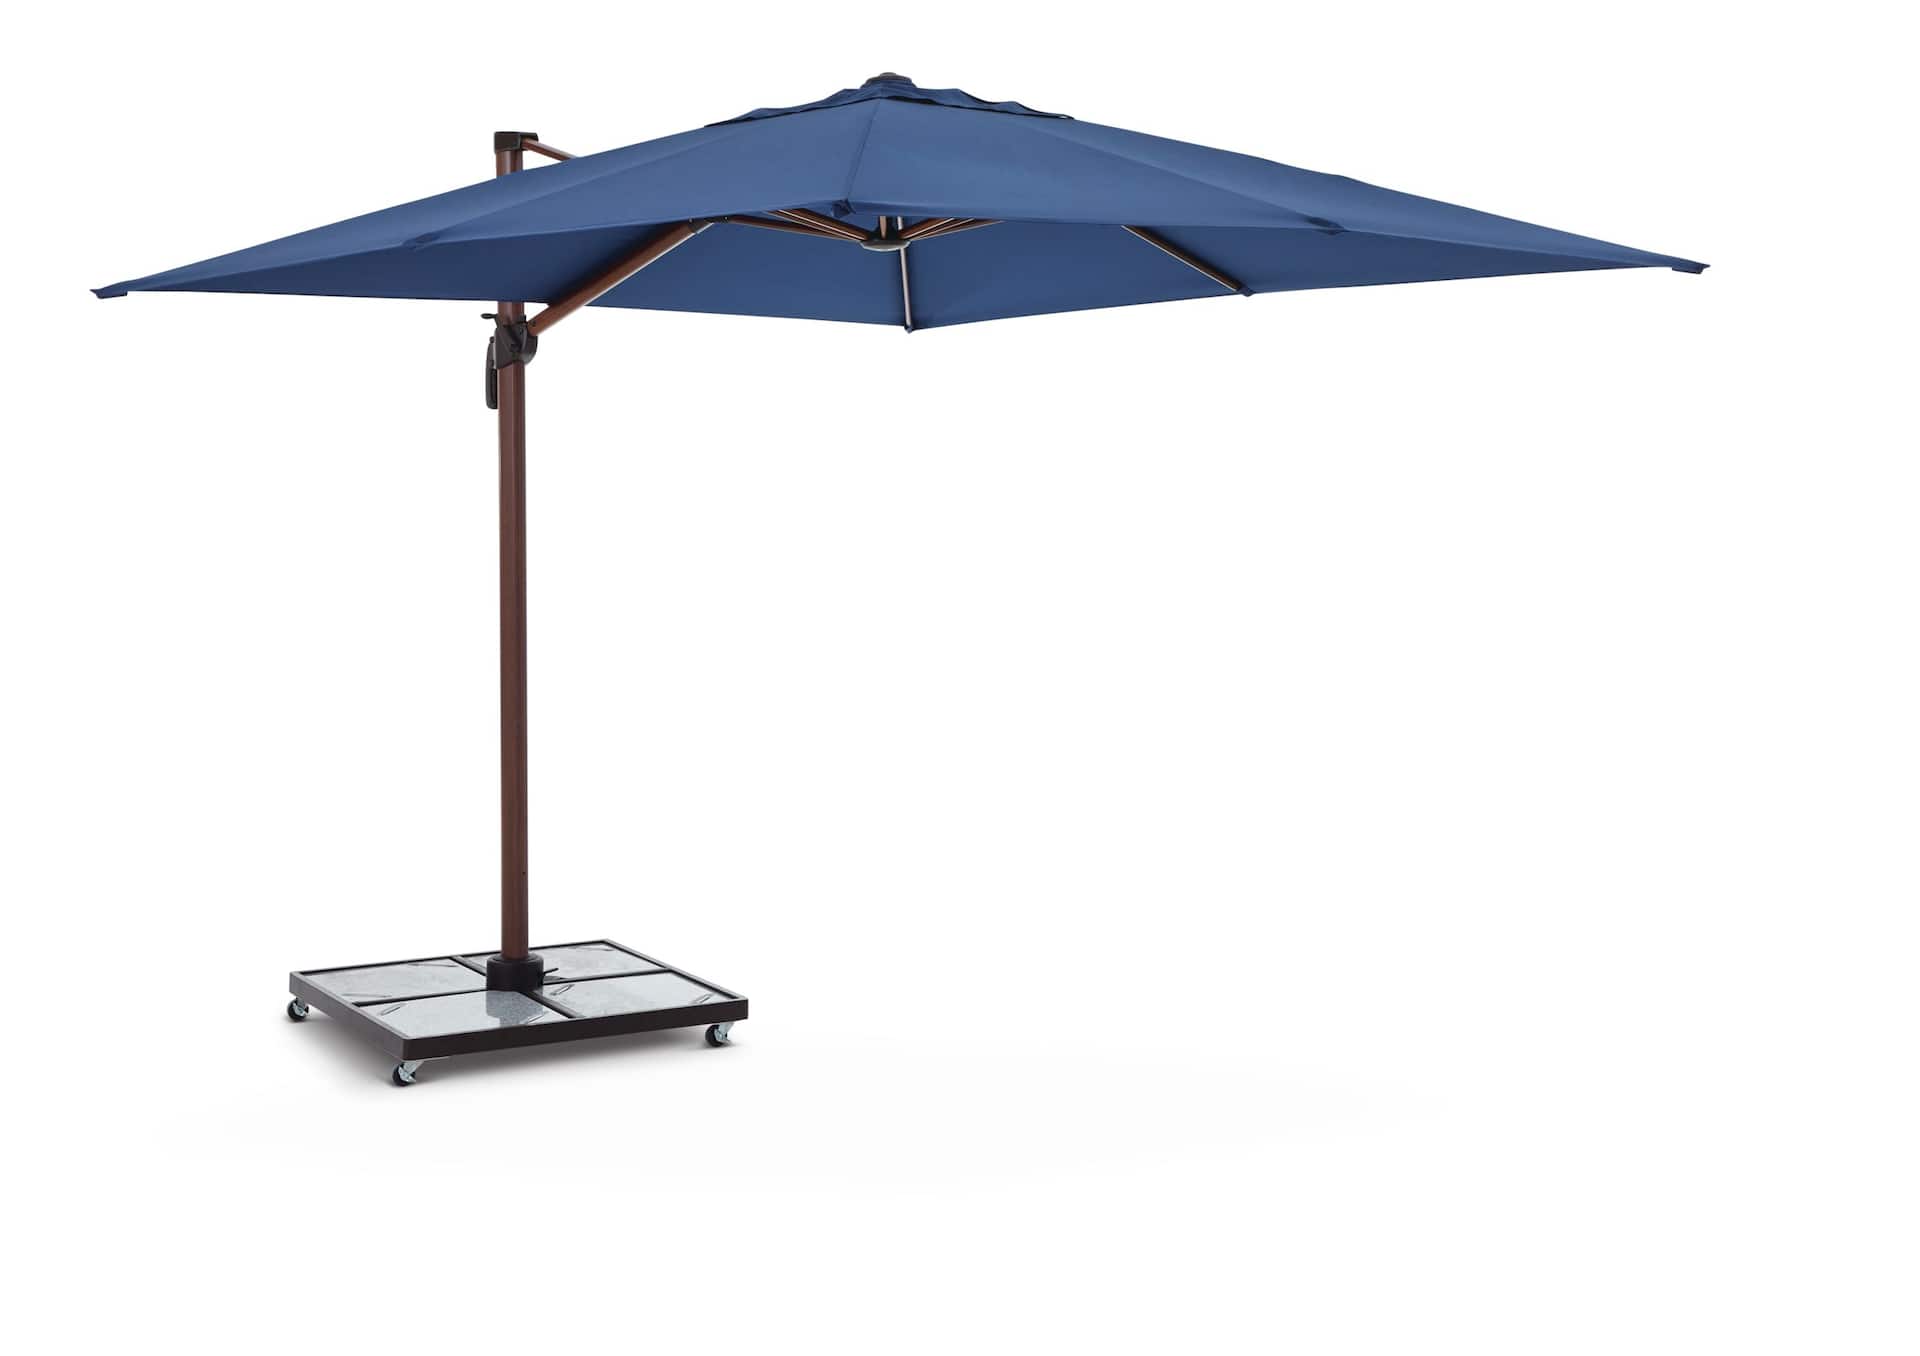 CANVAS Bahama Aluminium Outdoor/Patio Offset/Cantilever Umbrella